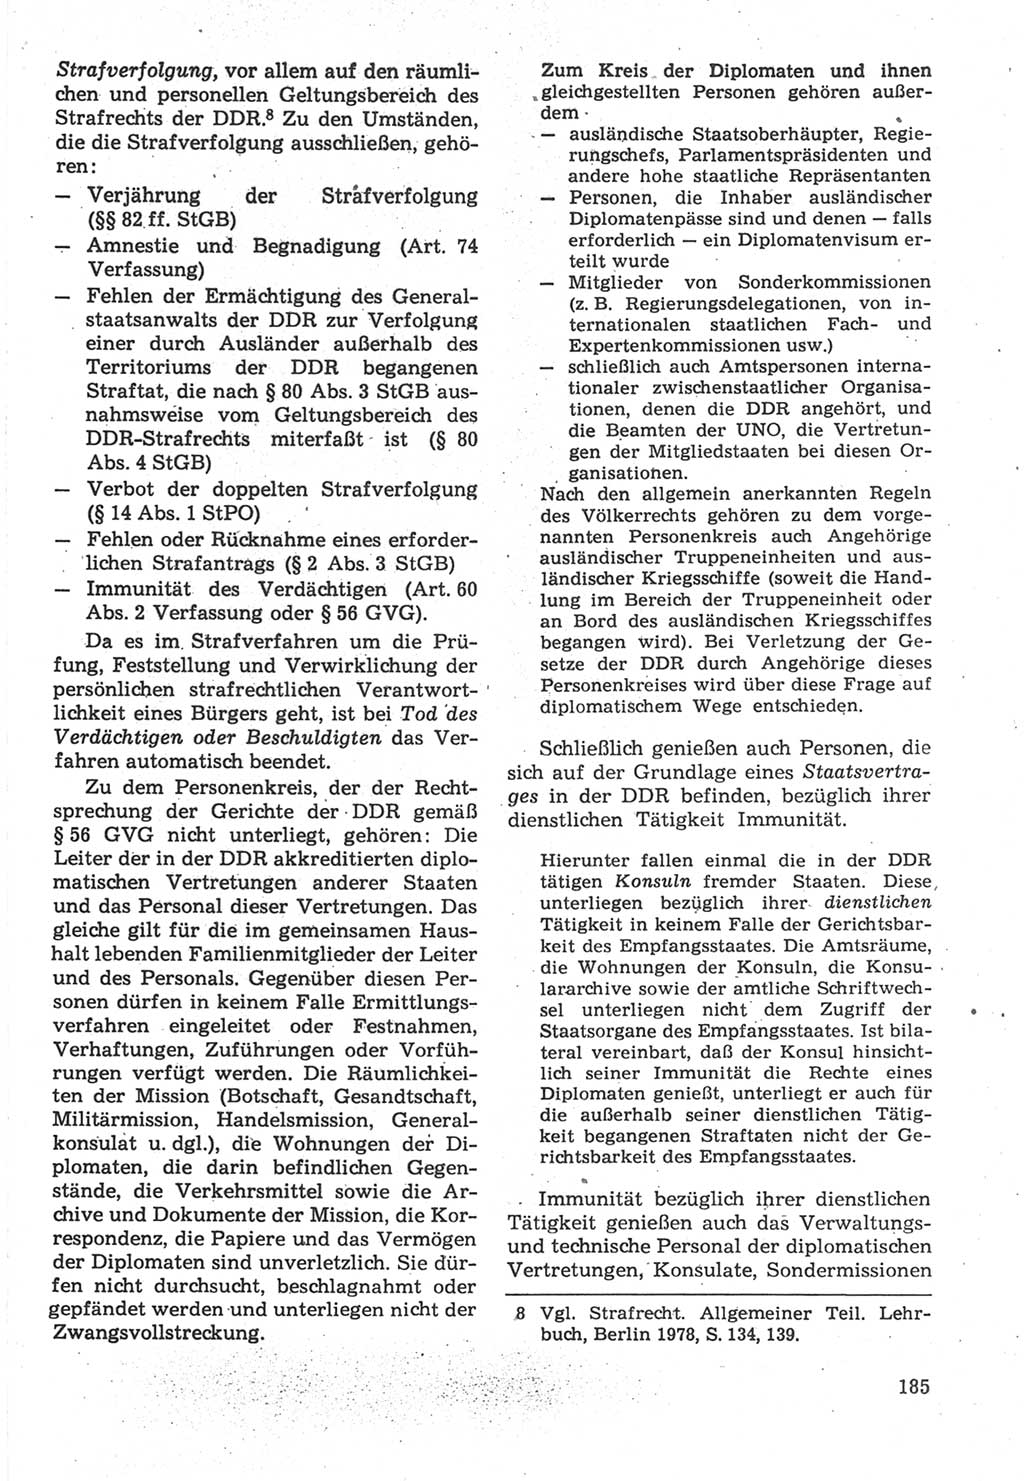 Strafverfahrensrecht [Deutsche Demokratische Republik (DDR)], Lehrbuch 1987, Seite 185 (Strafverf.-R. DDR Lb. 1987, S. 185)